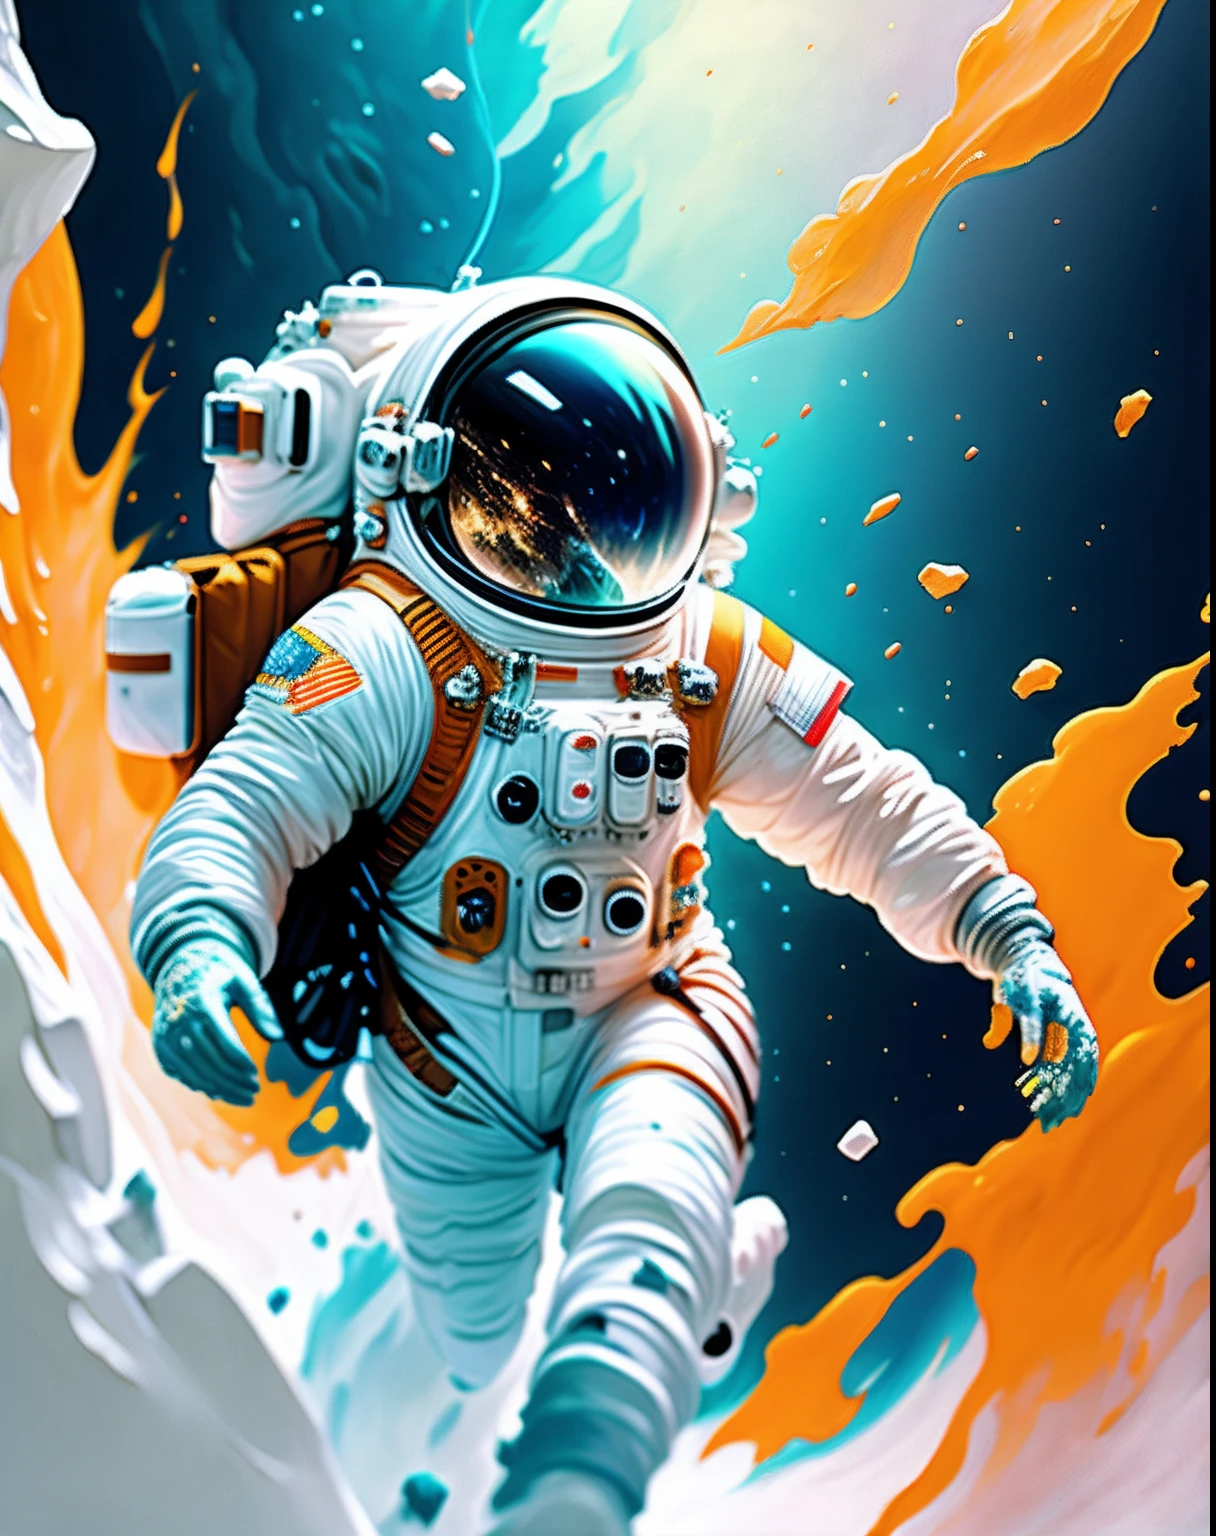 宇航员,  攀登小行星,  角色渲染, 超高品質模型, 空灵背景, 抽象美, 爆炸物體積, 油畫, 重击, 油漆滴落